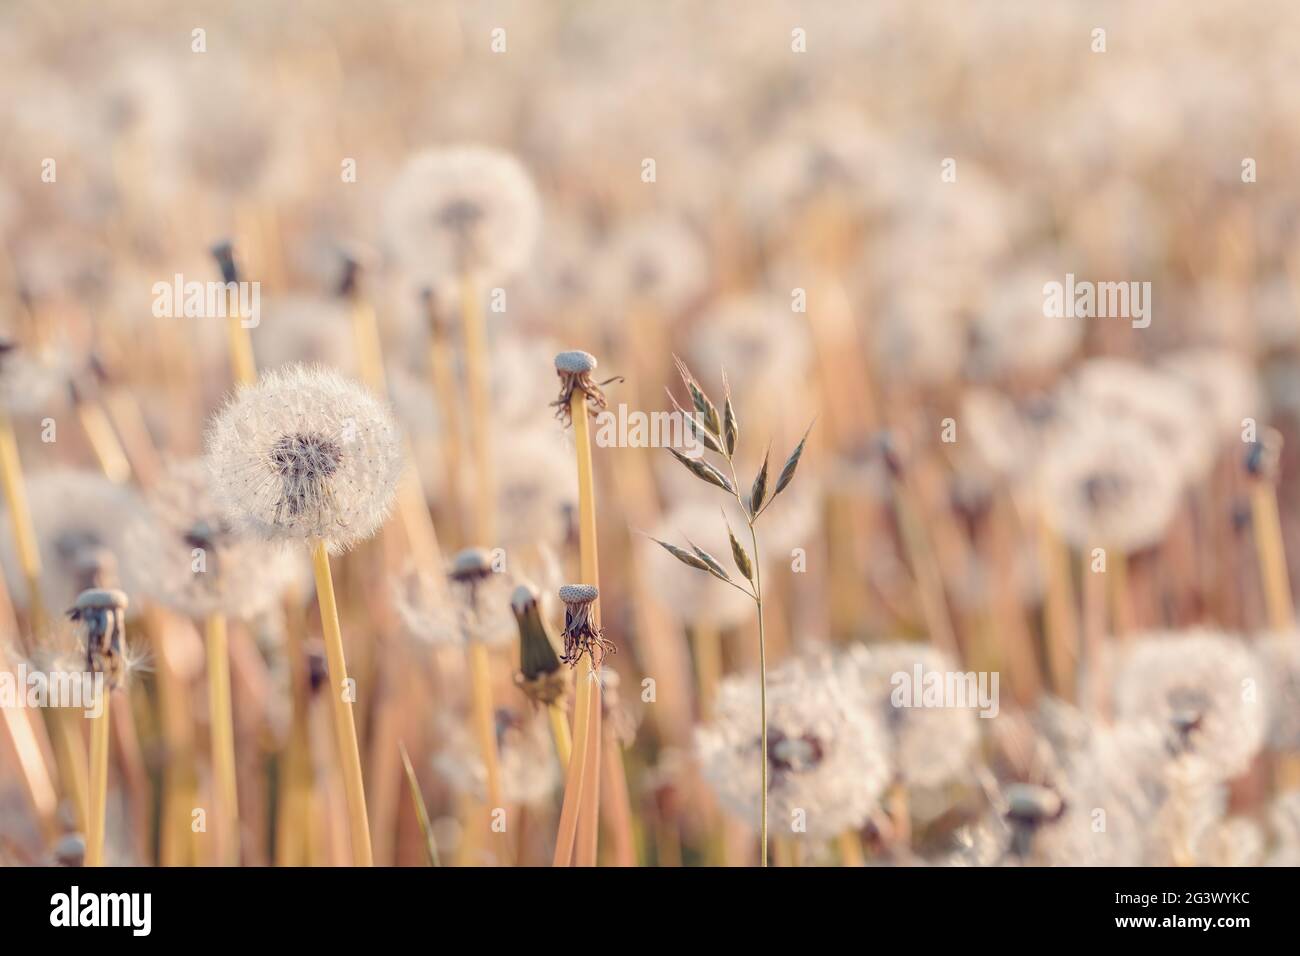 Beautiful spring flower dandelion in meadow Stock Photo